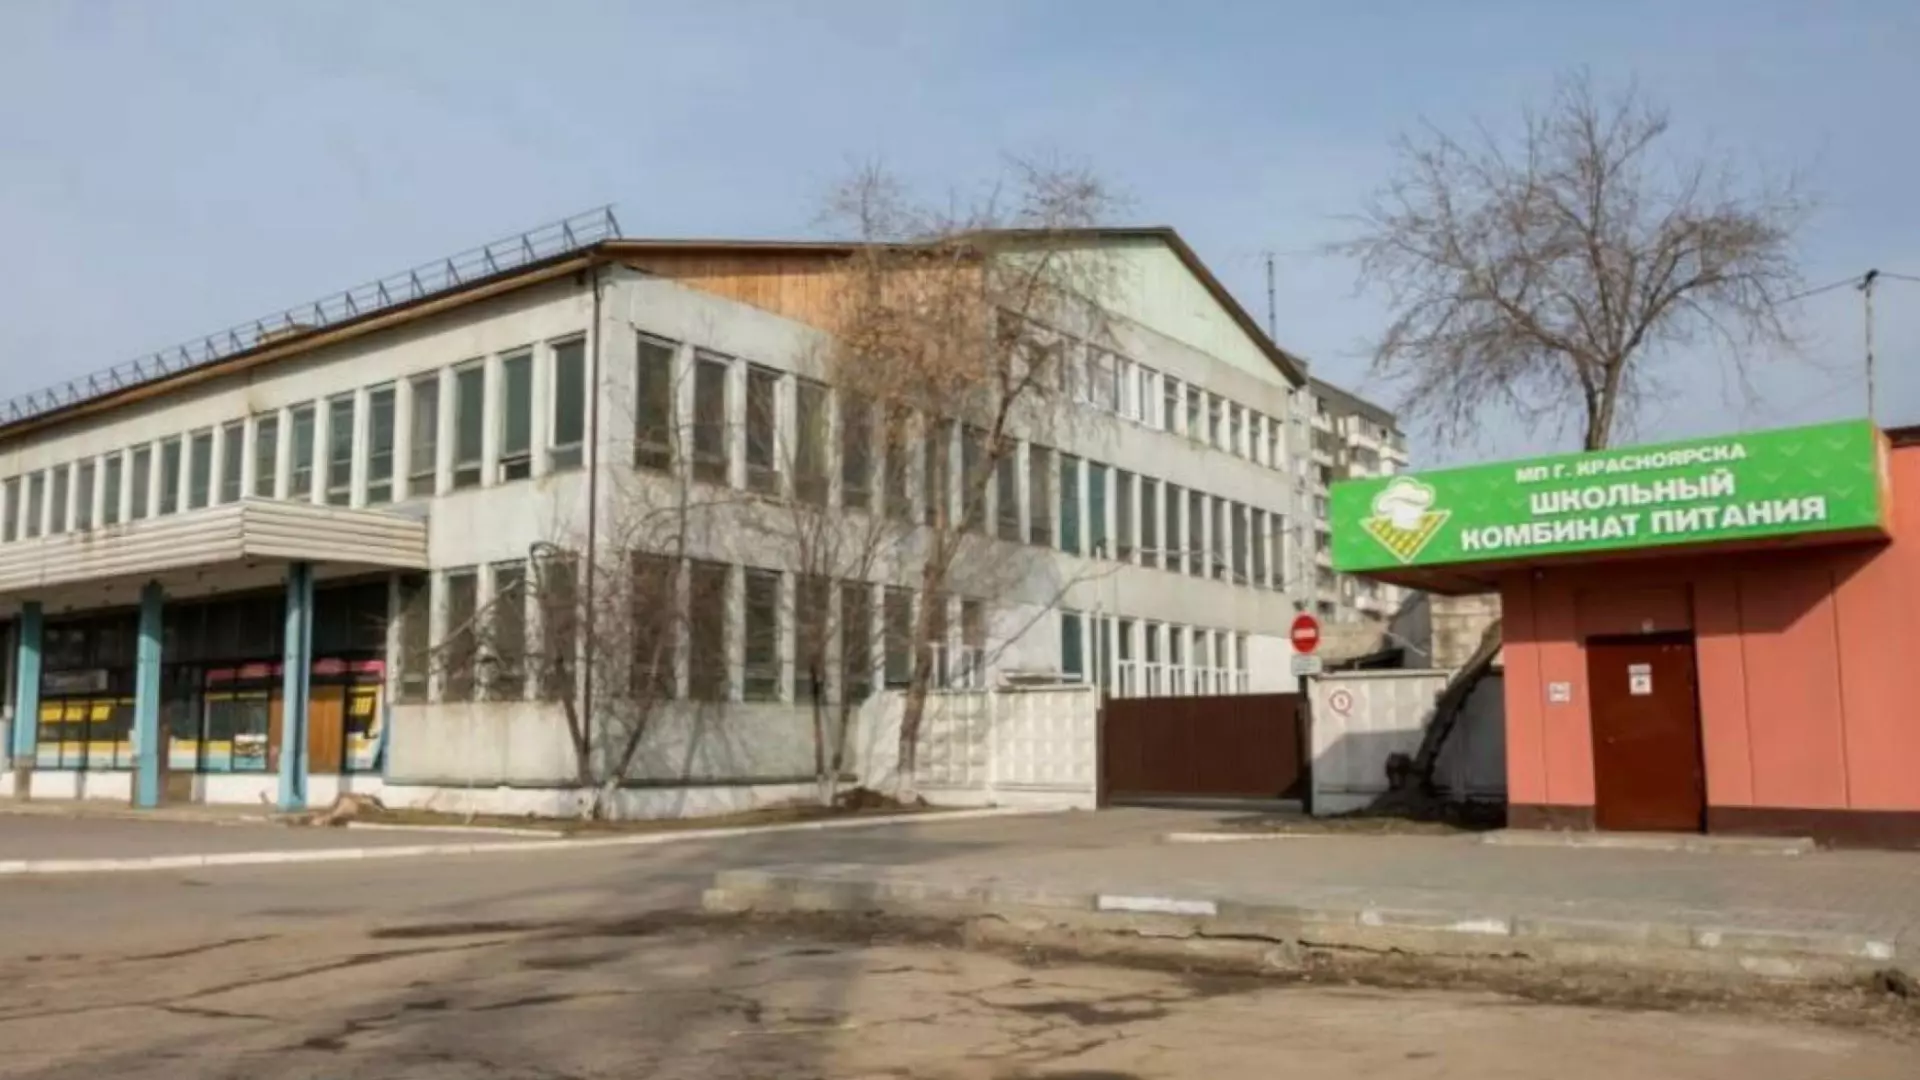 В Красноярске экс-директора «Школьного комбината питания» осудили за растрату